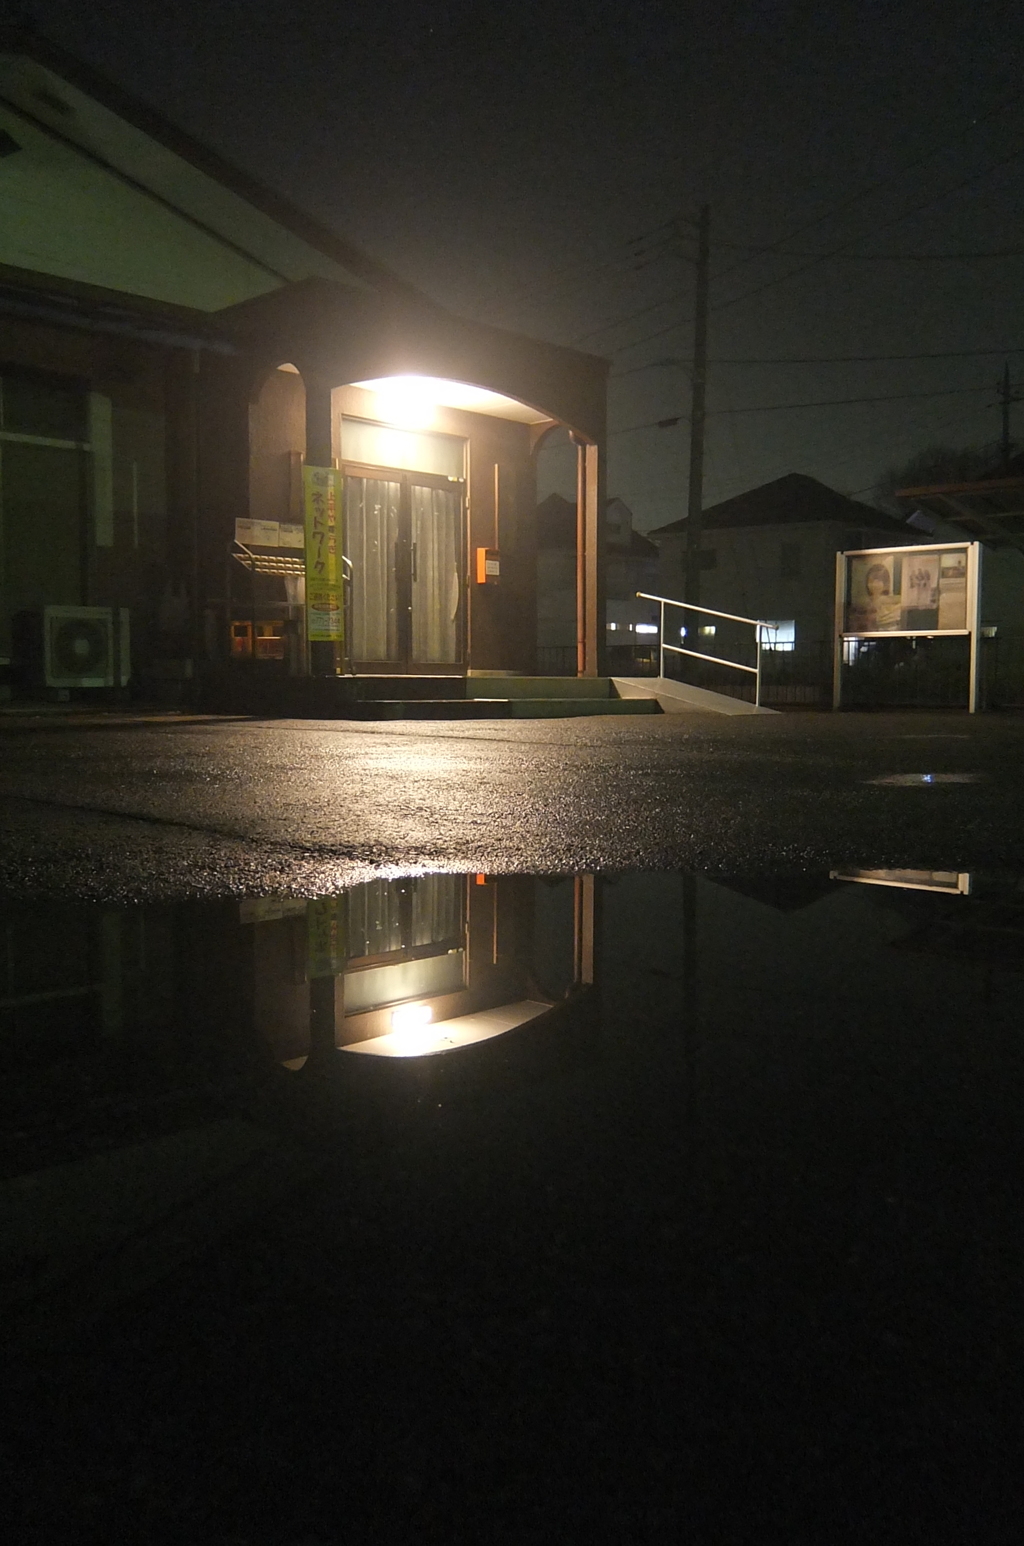 2015/02/08_夜、雨上がりの公民館